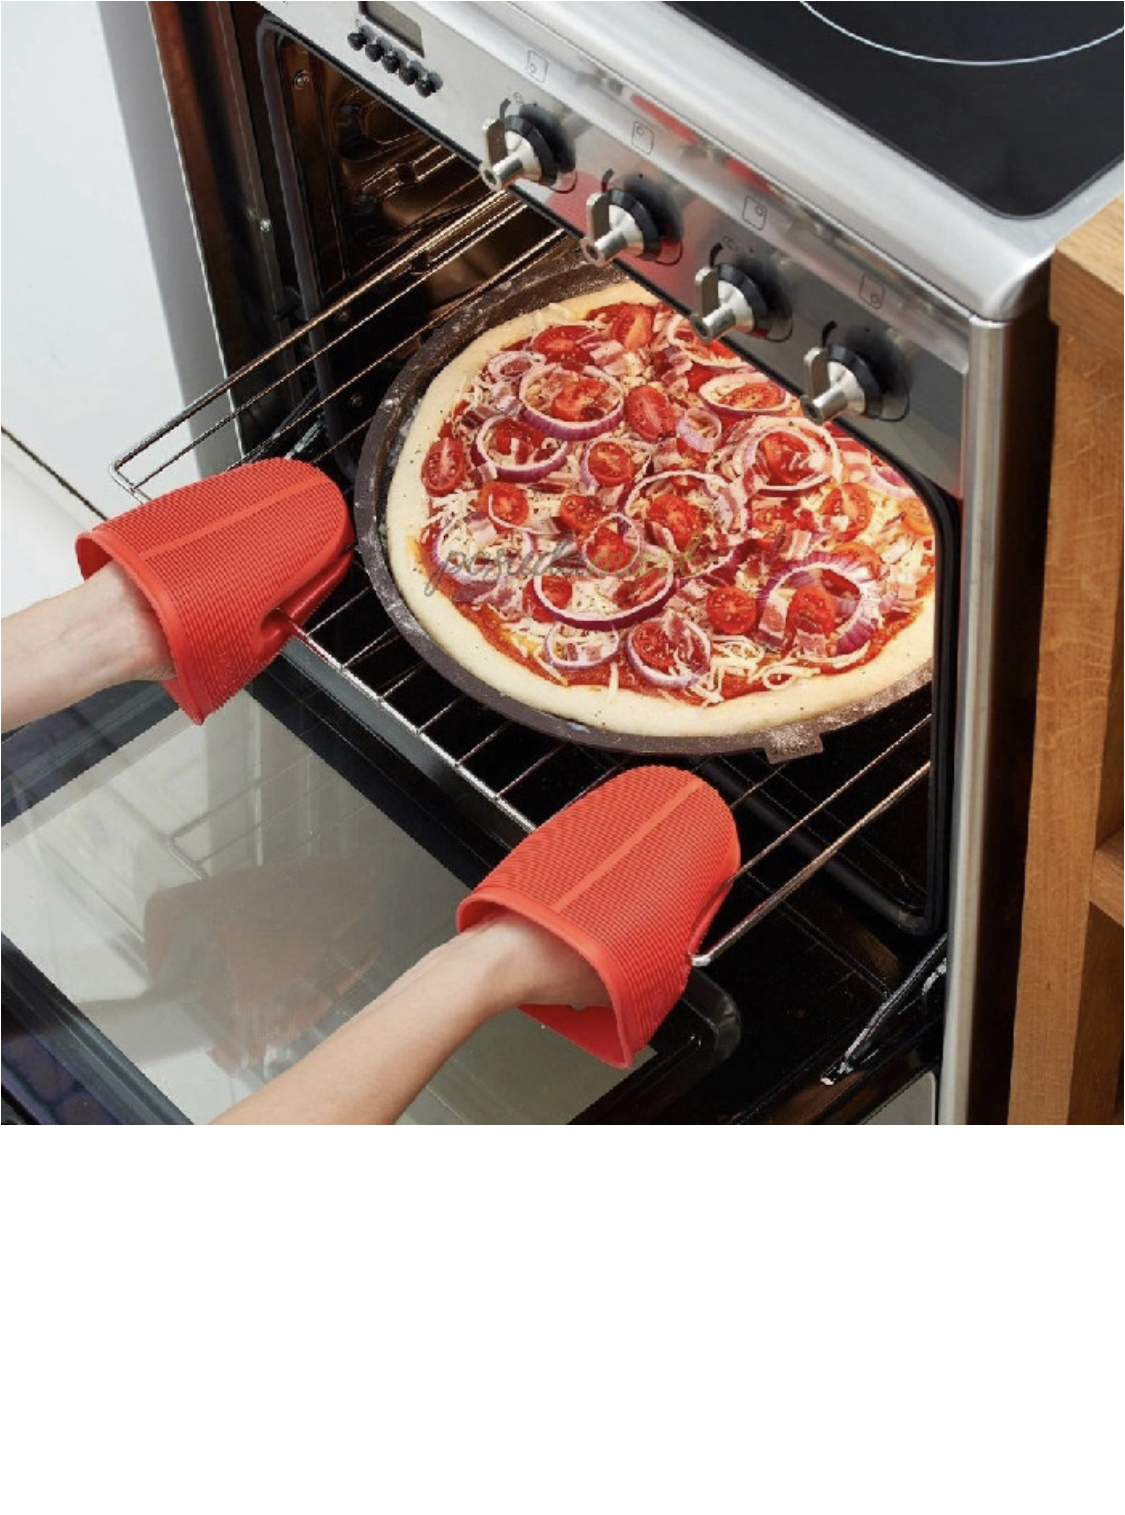 форма для пиццы с дырочками как пользоваться в духовке фото 39